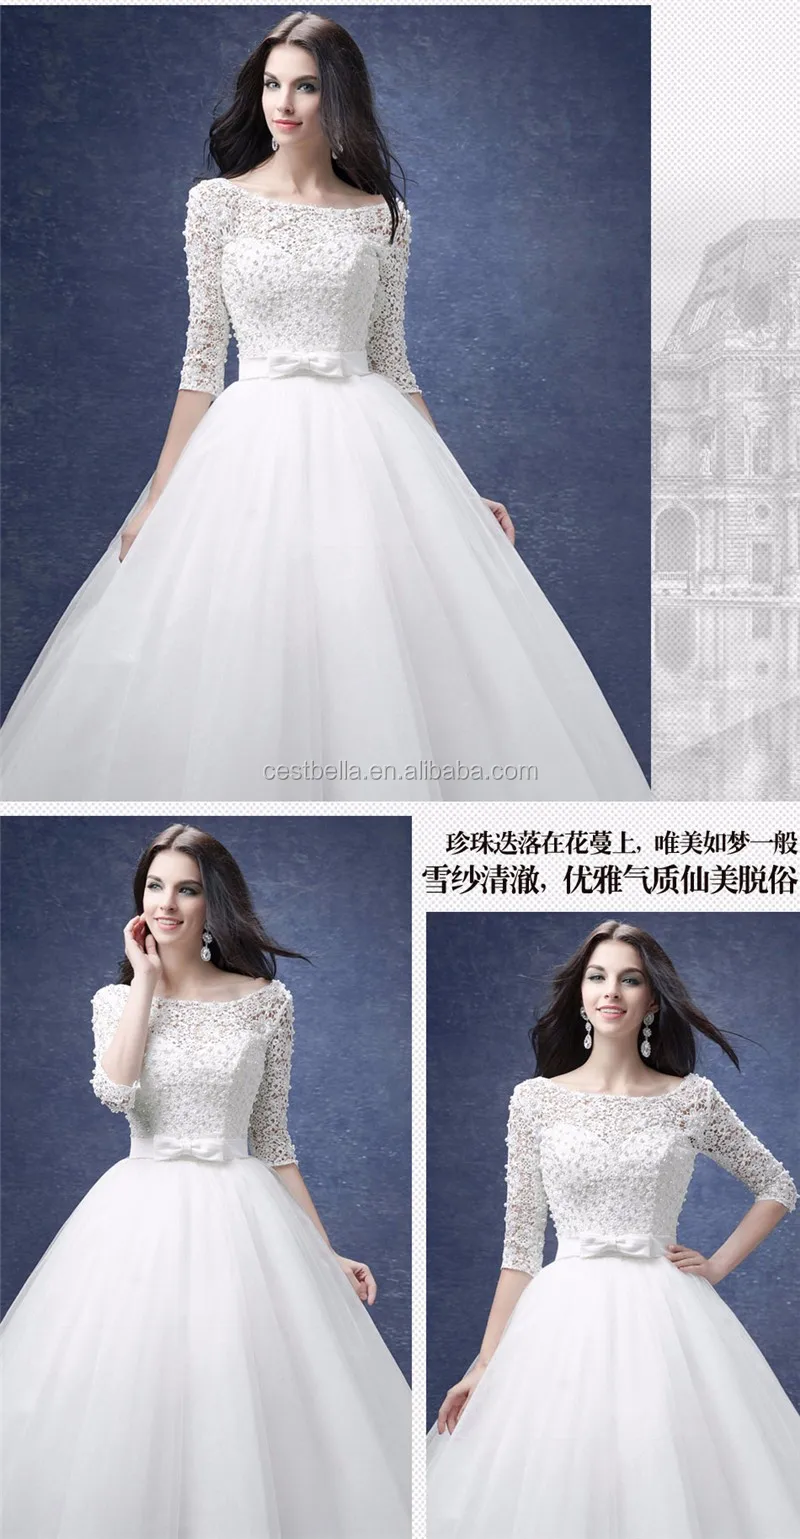 Putih Lengan Panjang Lace Applique Bridal Gowns 2018 Custom Made Murni Putih Afrika Pernikahan Gaun Dengan Mutiara Gaun Pengantin Buy Gaun Pengantin